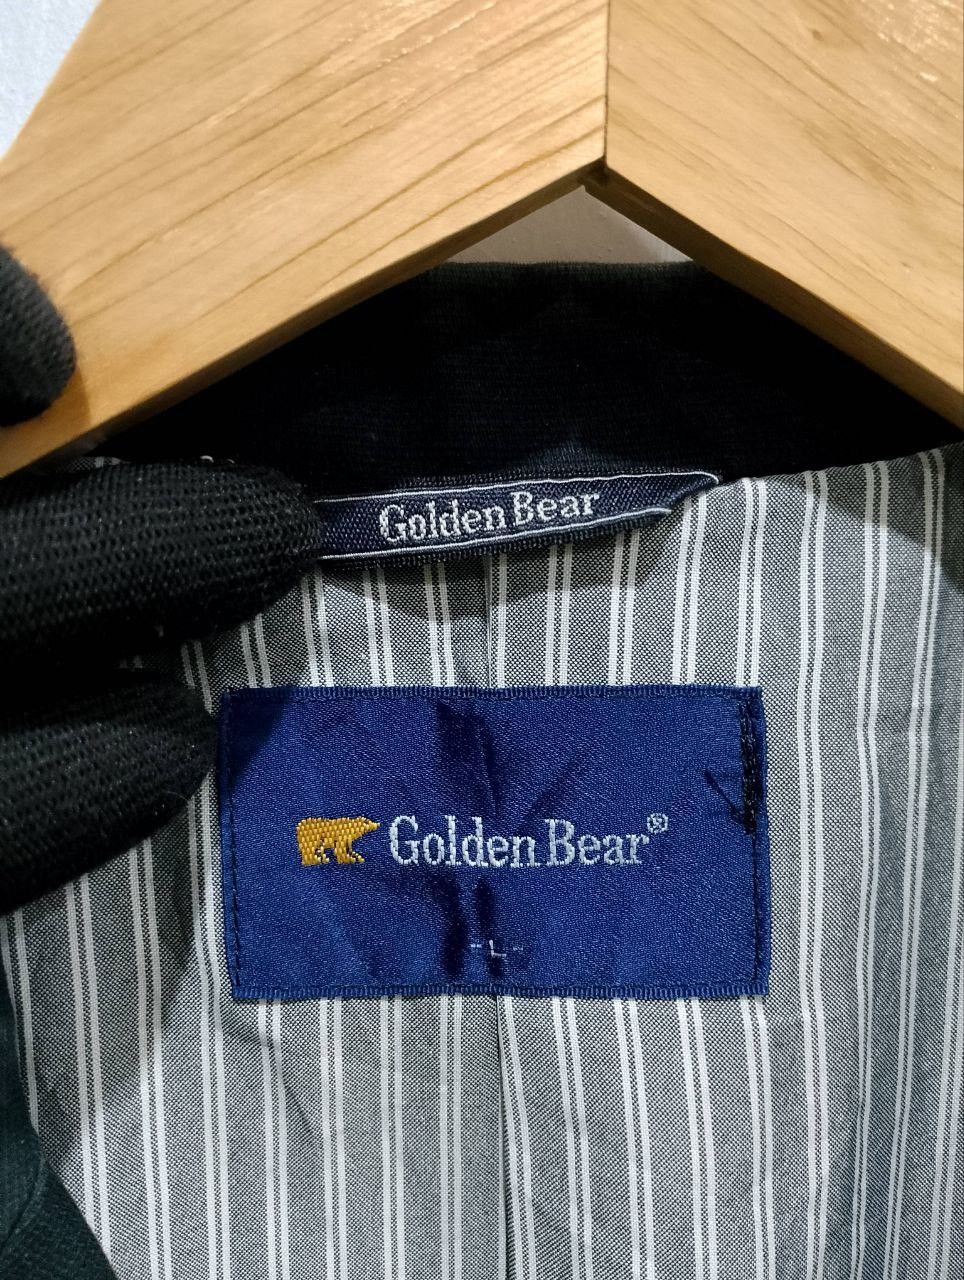 GOLDEN BEAR 3 Button Green Suede Coats Blazer Jacket - 15